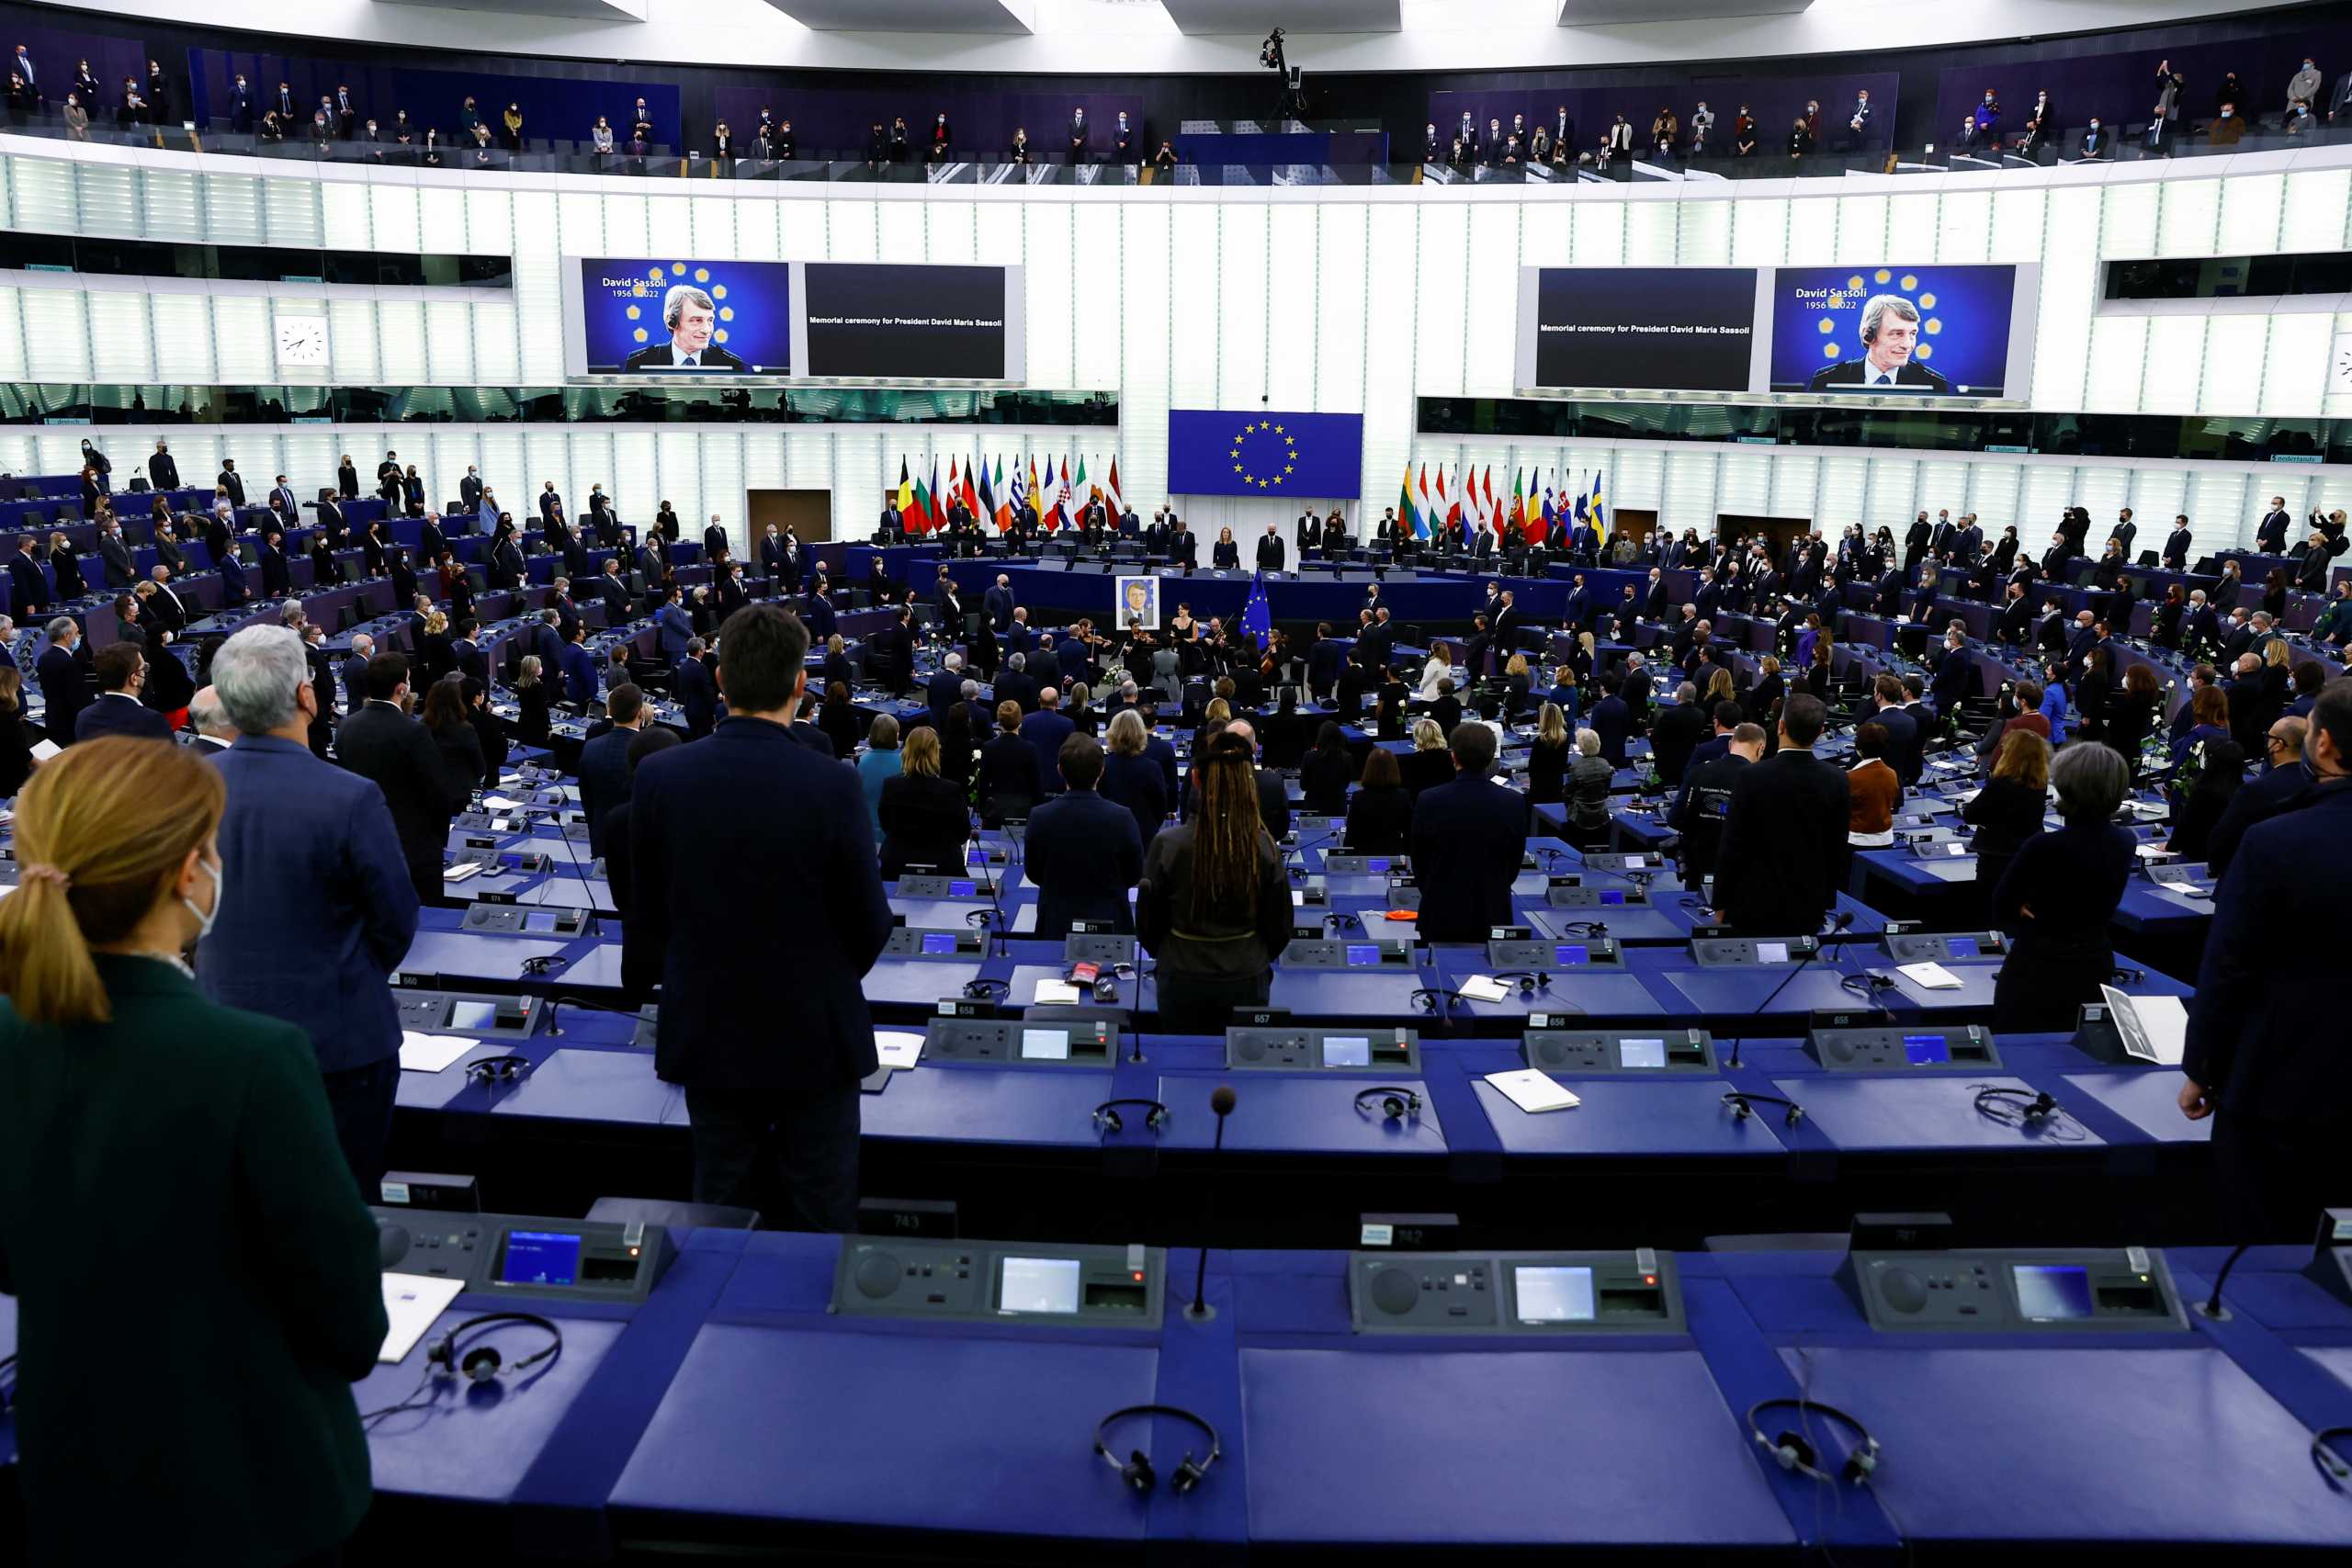 Ευρωπαϊκό Κοινοβούλιο: Ποιος θα είναι ο διάδοχος του Νταβίντ Σασόλι στην προεδρία